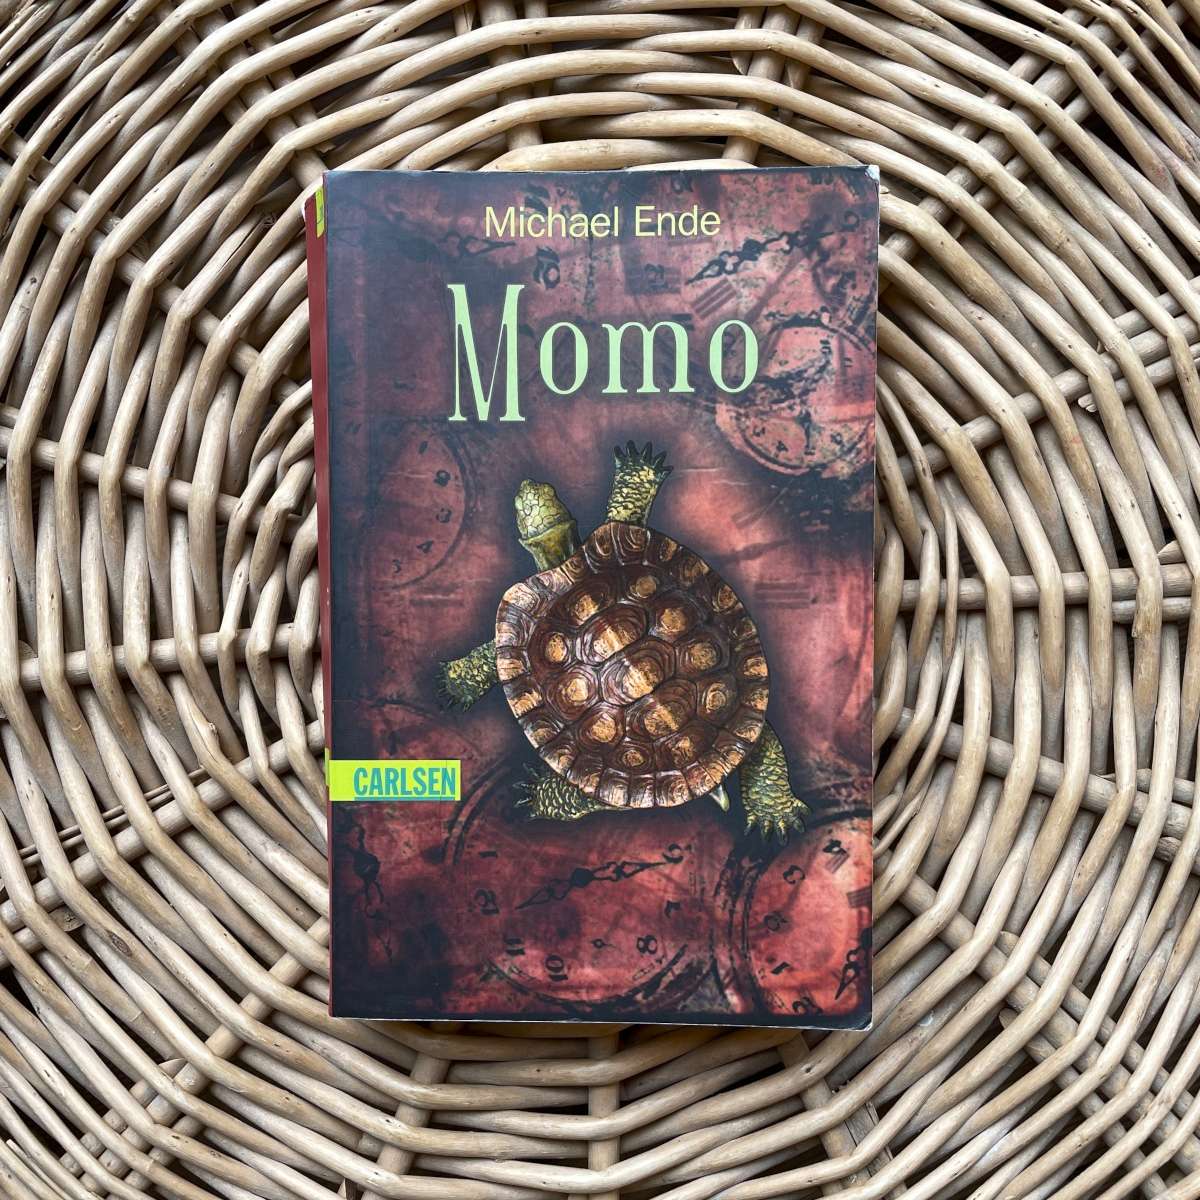 Buch von Michael Ende – Momo